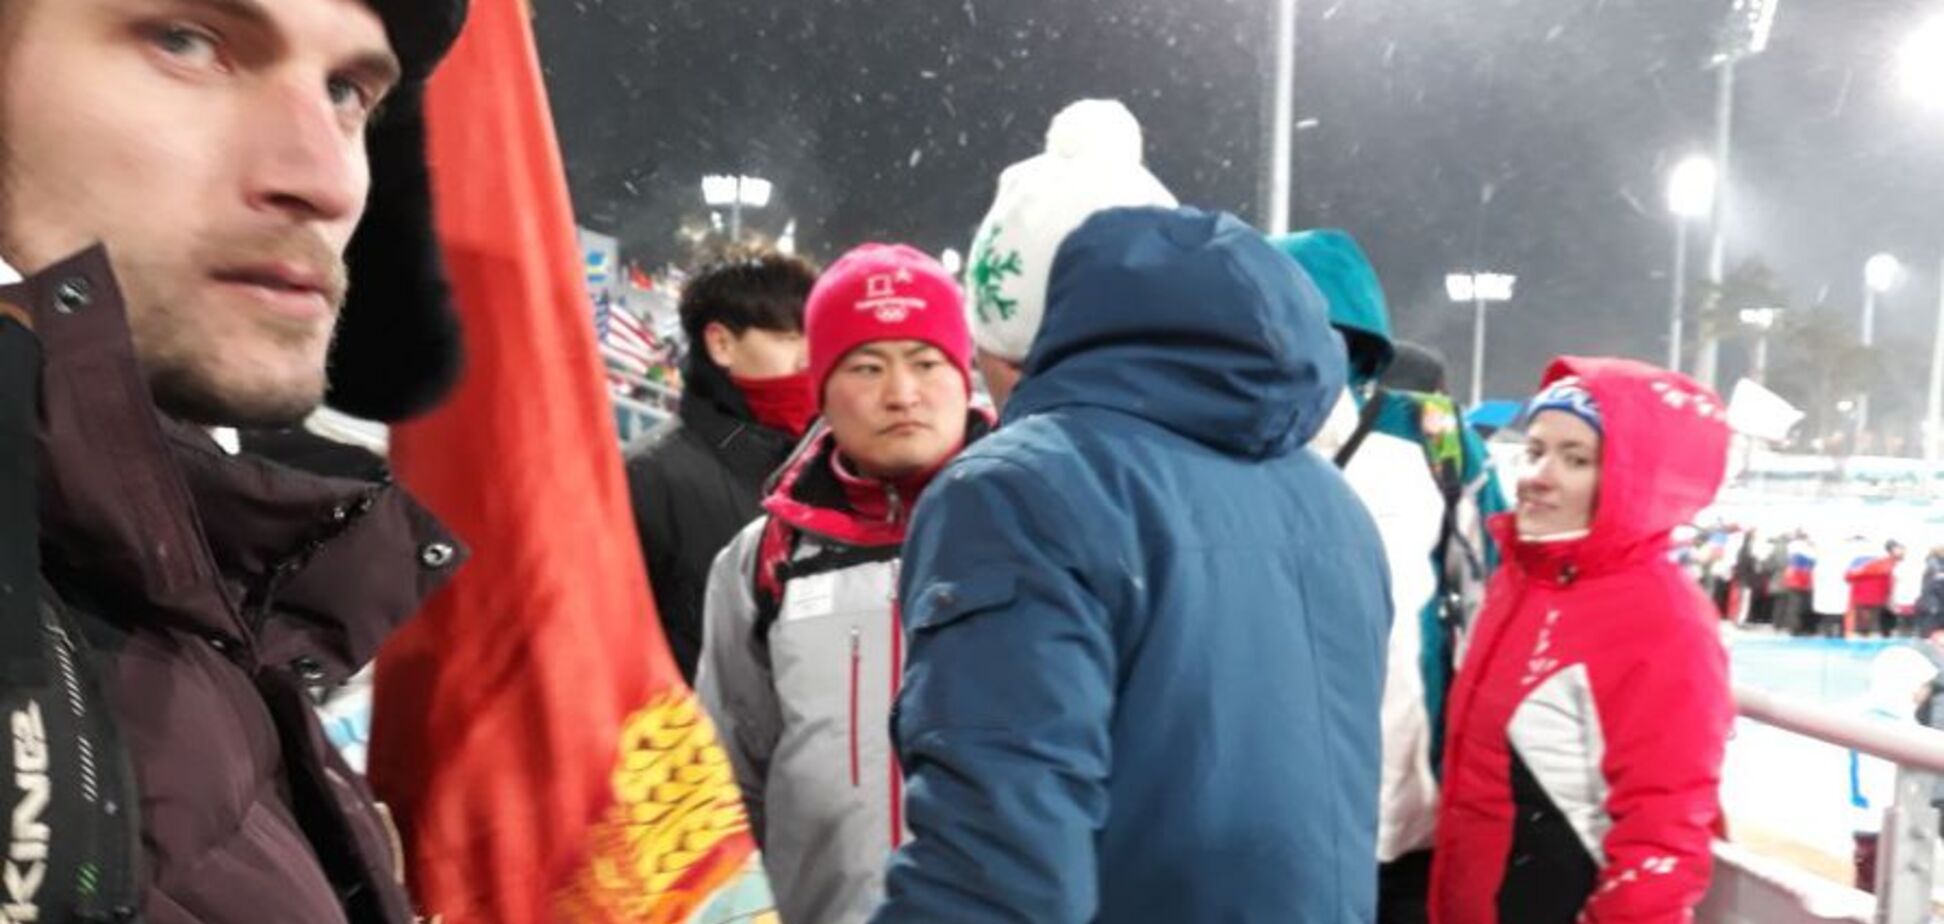 Олимпиада-2018: российских фанатов выставили со стадиона из-за флага коммунистов - фото